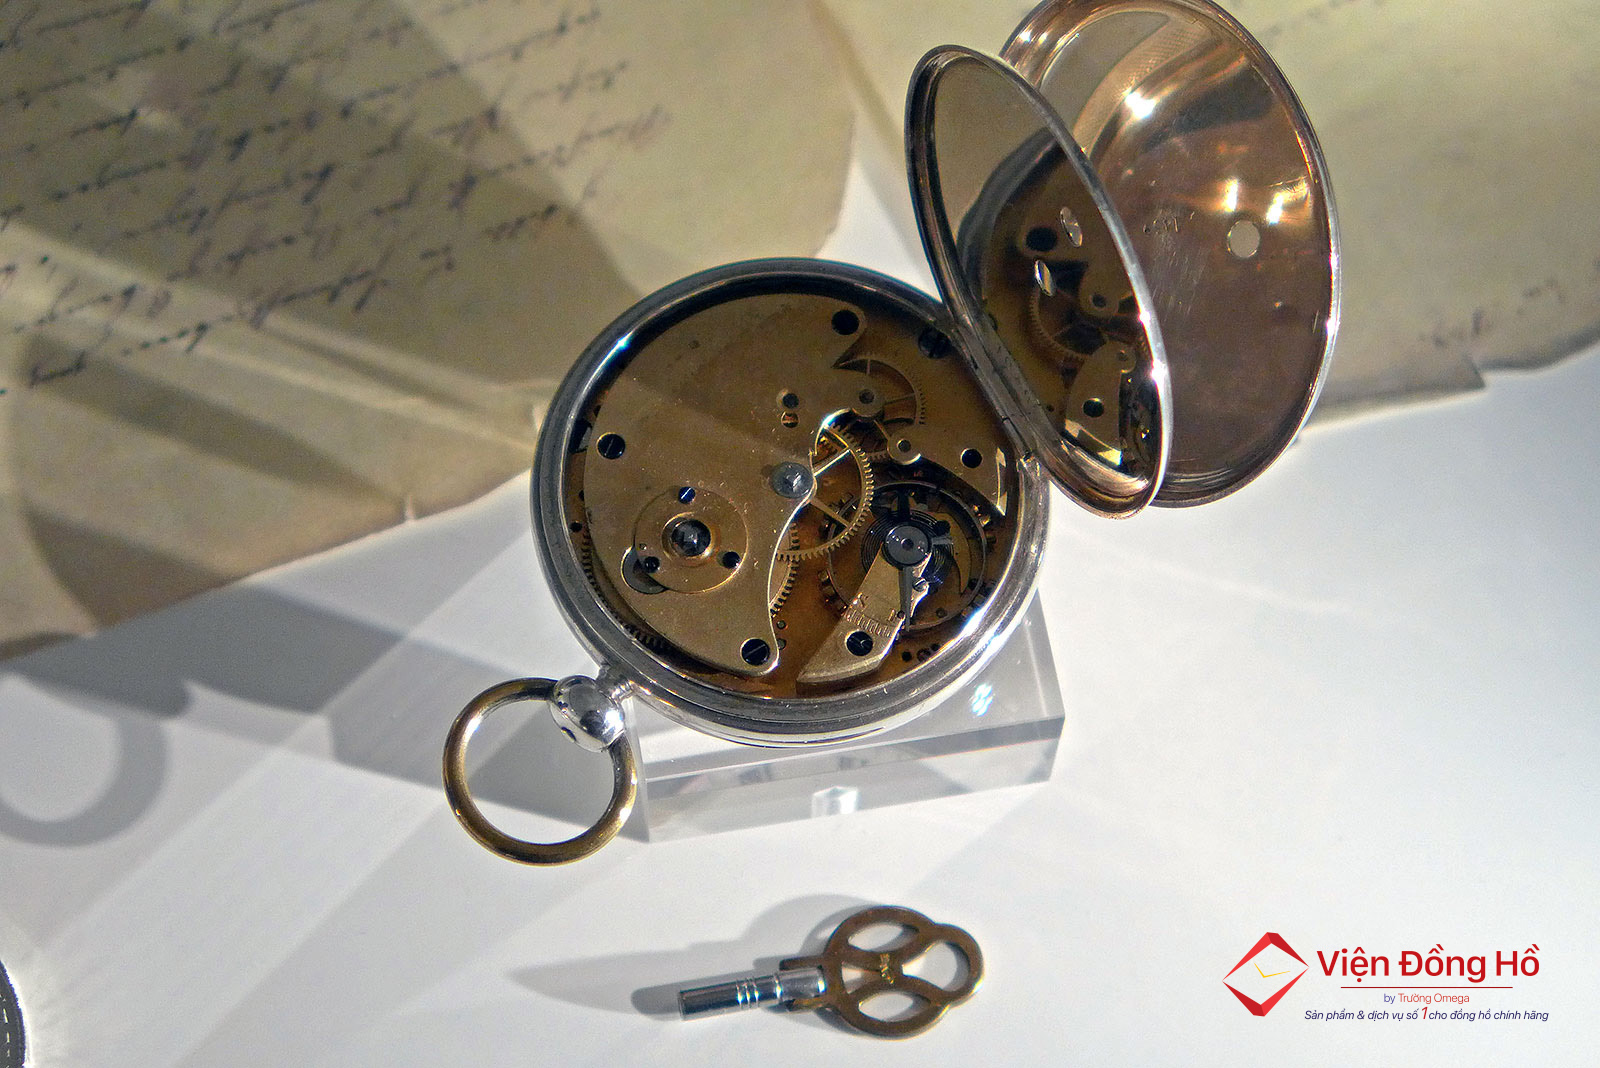 German Watch Museum - Tham quan bao tang dong ho Duc 4